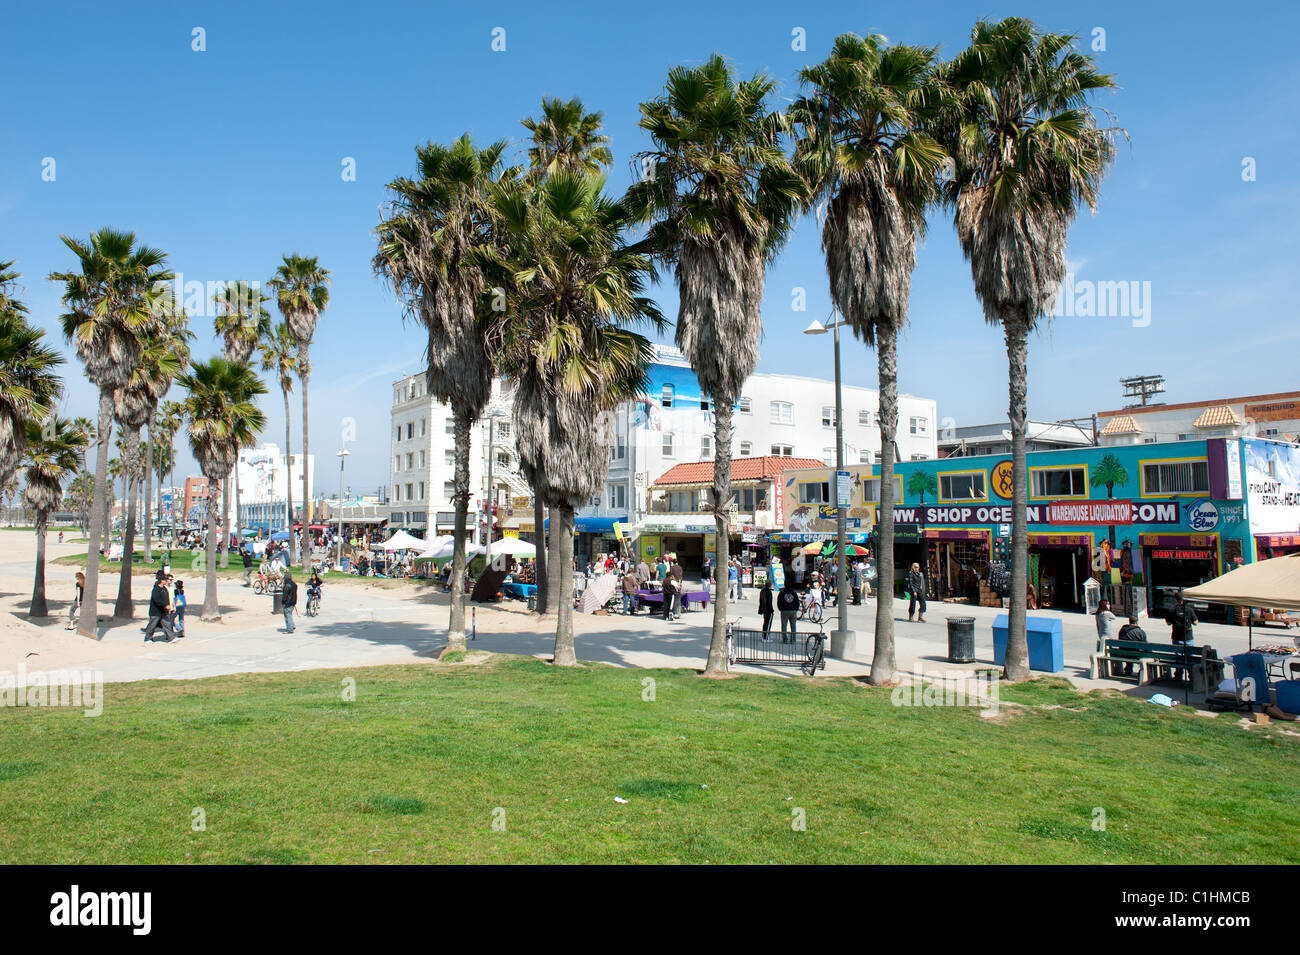 Célèbre promenade de Venice Beach accueille près de deux kilomètres de boutiques, restaurants et vendeurs de rue Banque D'Images